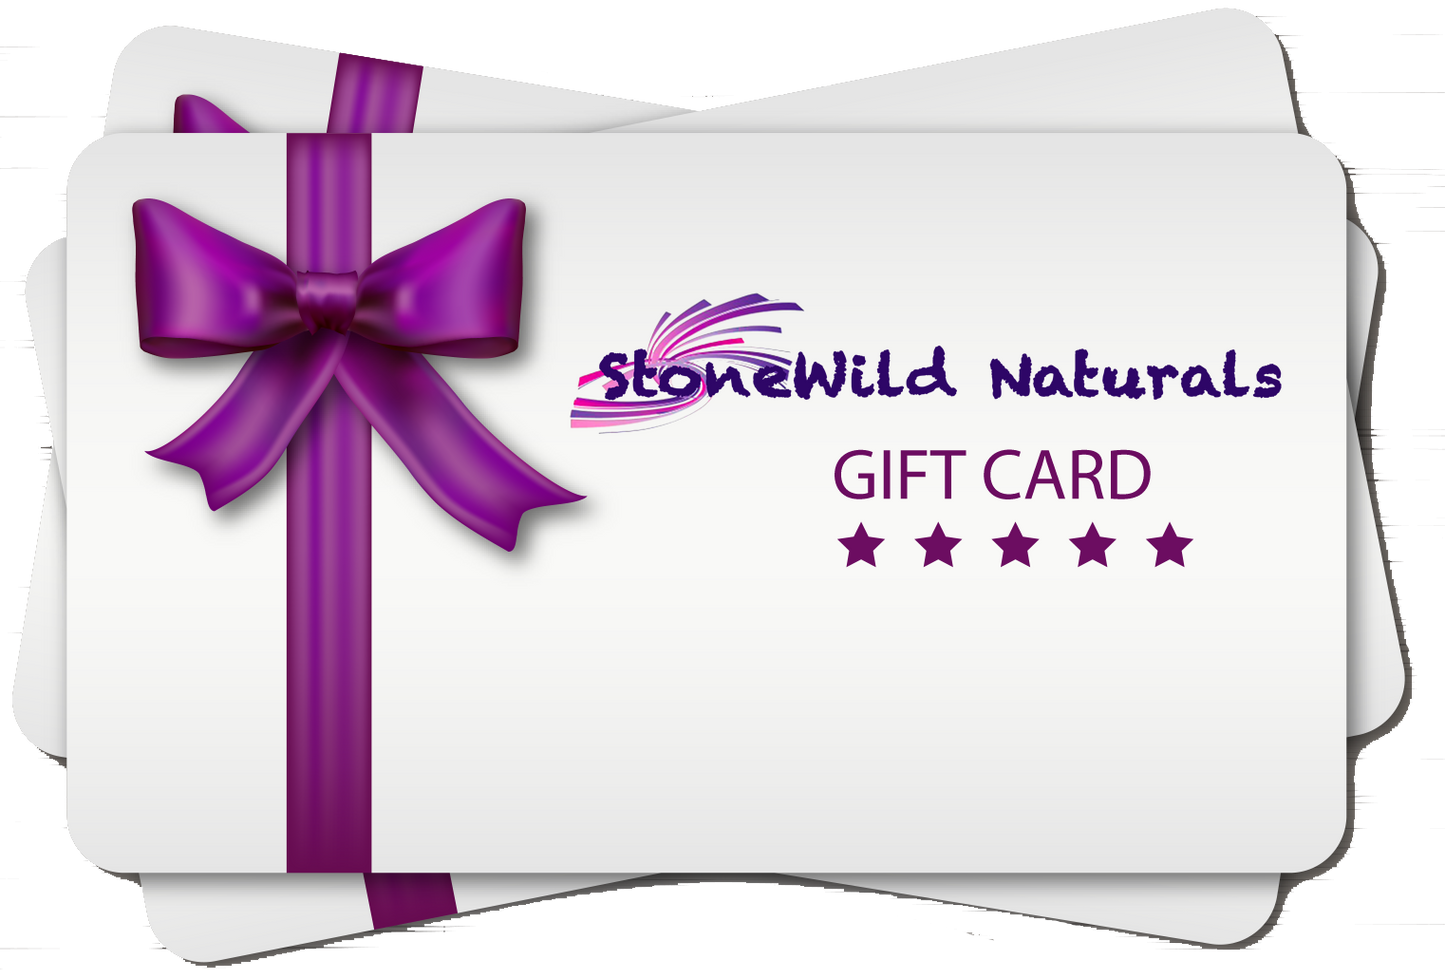 StoneWild Naturals Gift Card